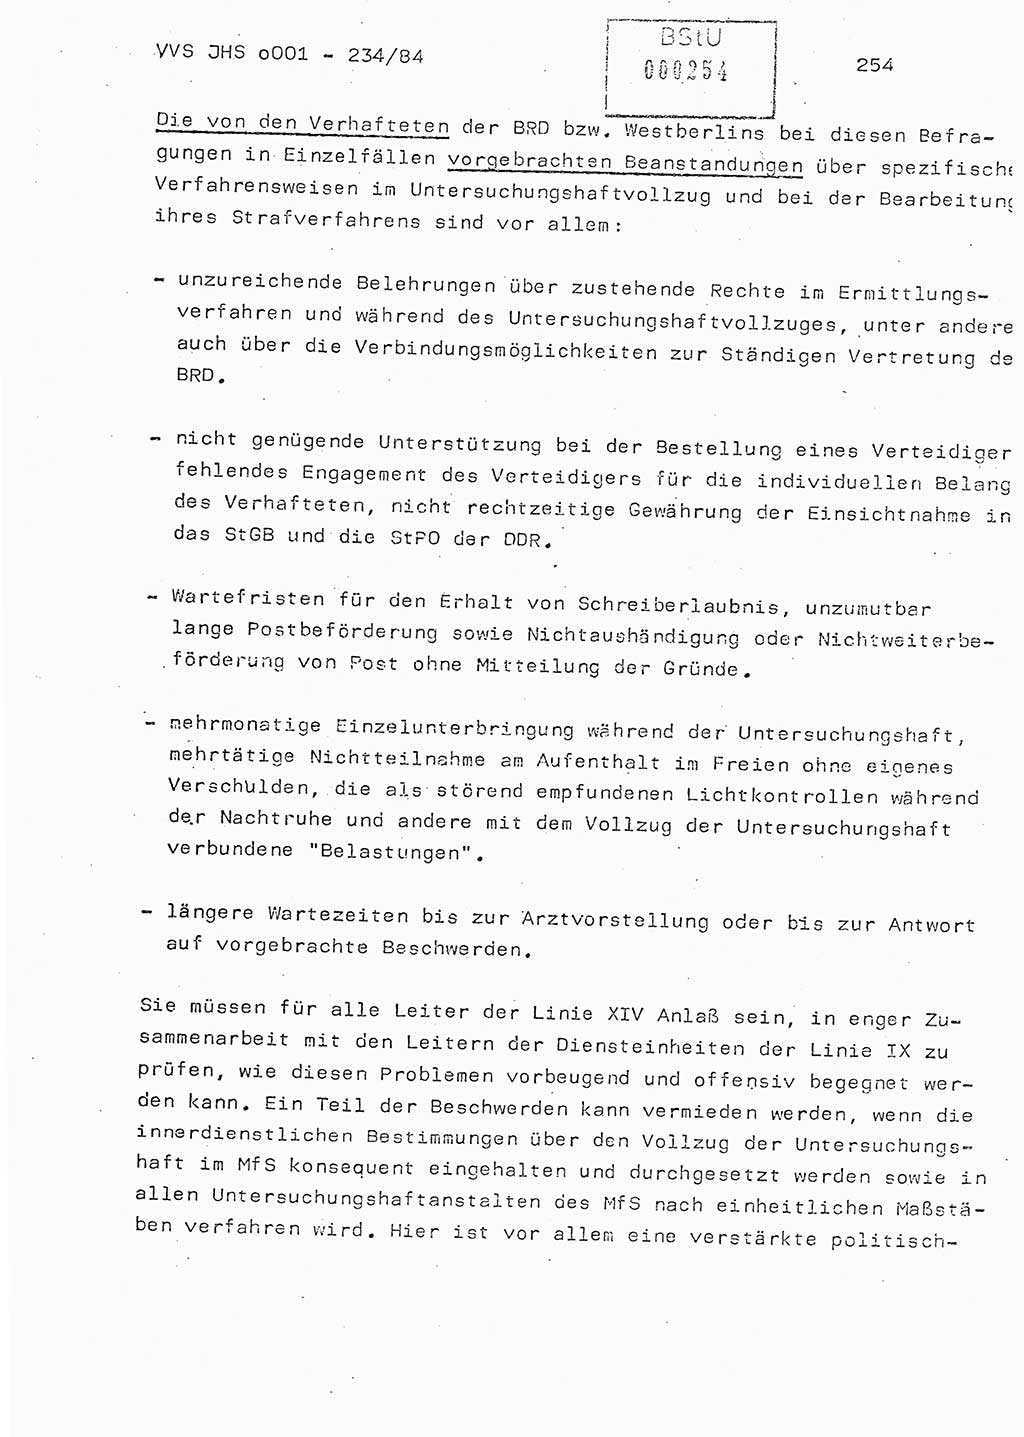 Dissertation Oberst Siegfried Rataizick (Abt. ⅩⅣ), Oberstleutnant Volkmar Heinz (Abt. ⅩⅣ), Oberstleutnant Werner Stein (HA Ⅸ), Hauptmann Heinz Conrad (JHS), Ministerium für Staatssicherheit (MfS) [Deutsche Demokratische Republik (DDR)], Juristische Hochschule (JHS), Vertrauliche Verschlußsache (VVS) o001-234/84, Potsdam 1984, Seite 254 (Diss. MfS DDR JHS VVS o001-234/84 1984, S. 254)